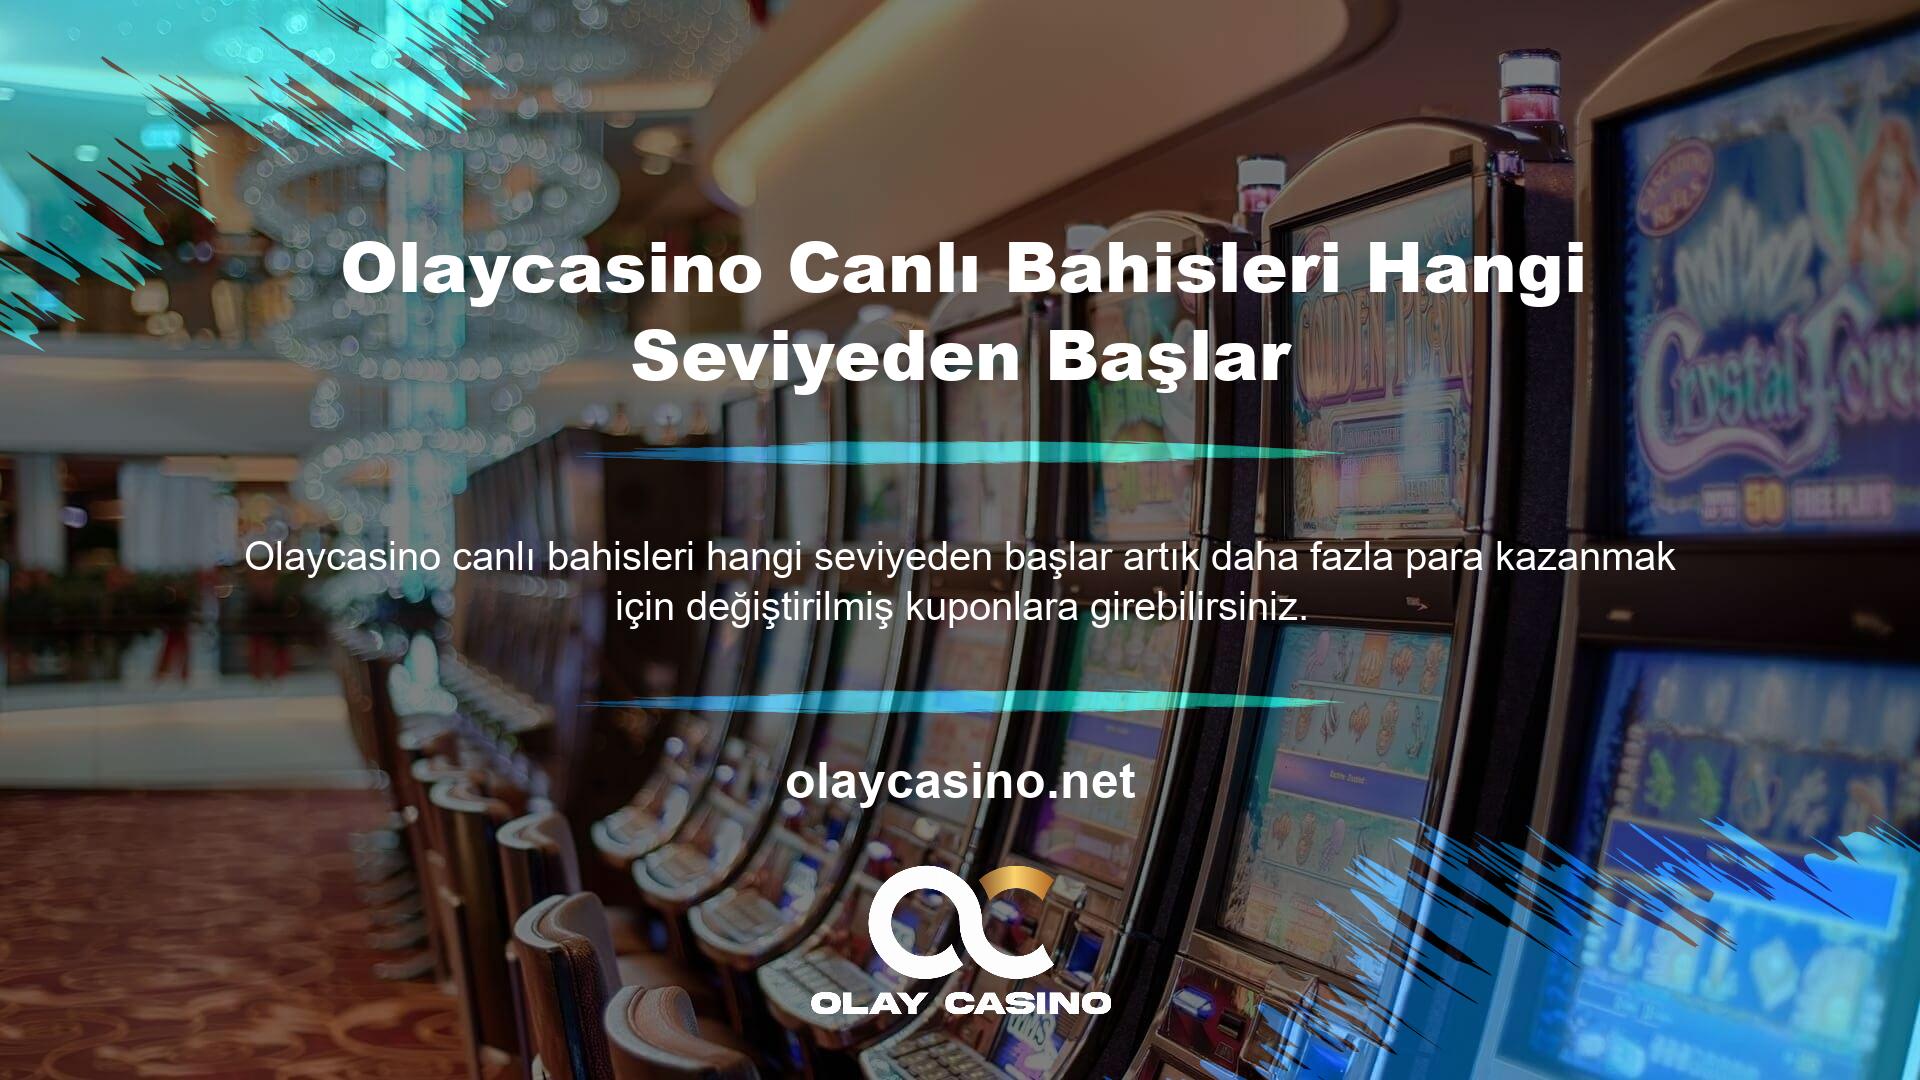 Ülkemizdeki casino otoriteleri tarafından yasal kabul edilen işletmelerin canlı bahis oynamasına izin verilmemektedir